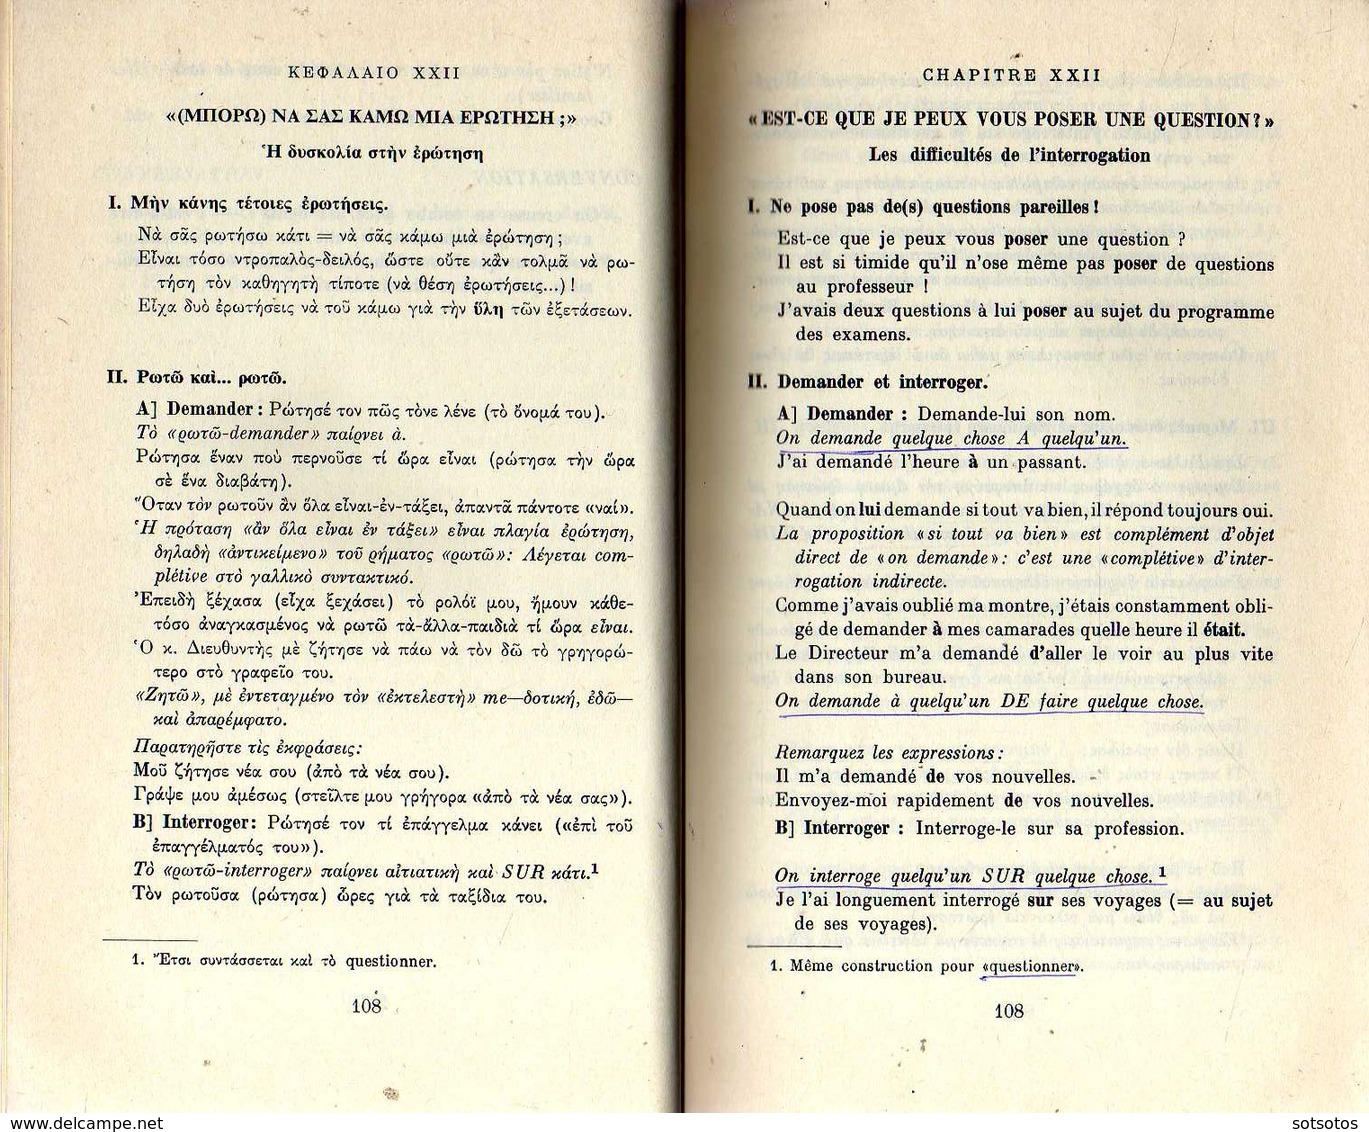 GREC-FRANçAIS: VERS UN MEILLEUR FRANçAIS (ΒΕΛΤΙΩΜΕΝΑ ΓΑΛΛΙΚΑ): P. BURNEY - P. CONSTANTINIDI (1979) 249Χ2 pages (une en g